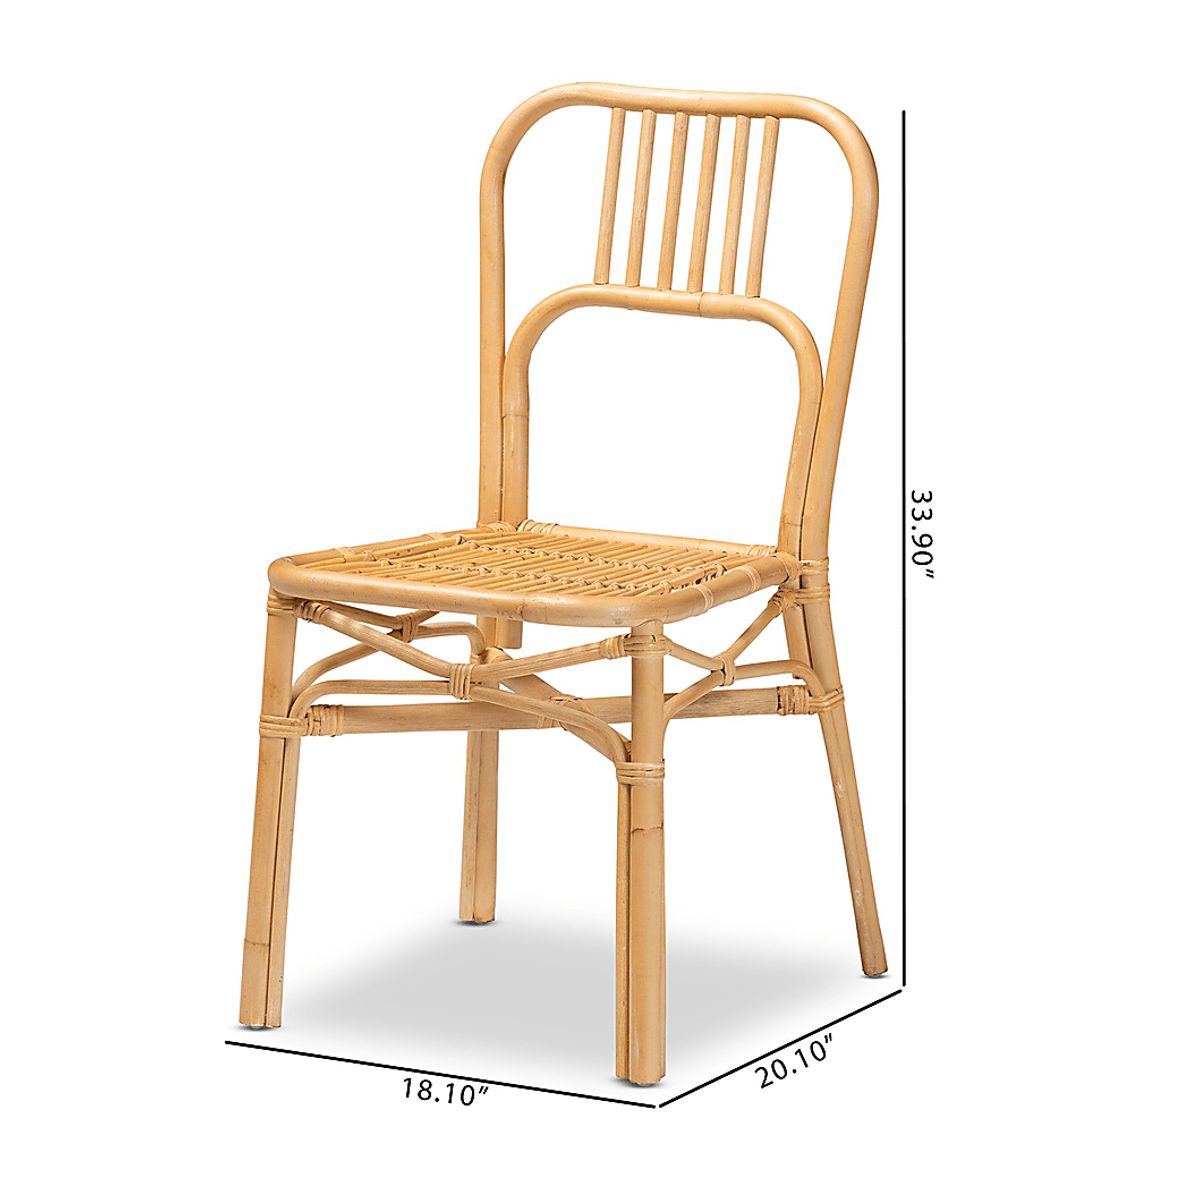 Ivyan Brown Side Chair Set of 2